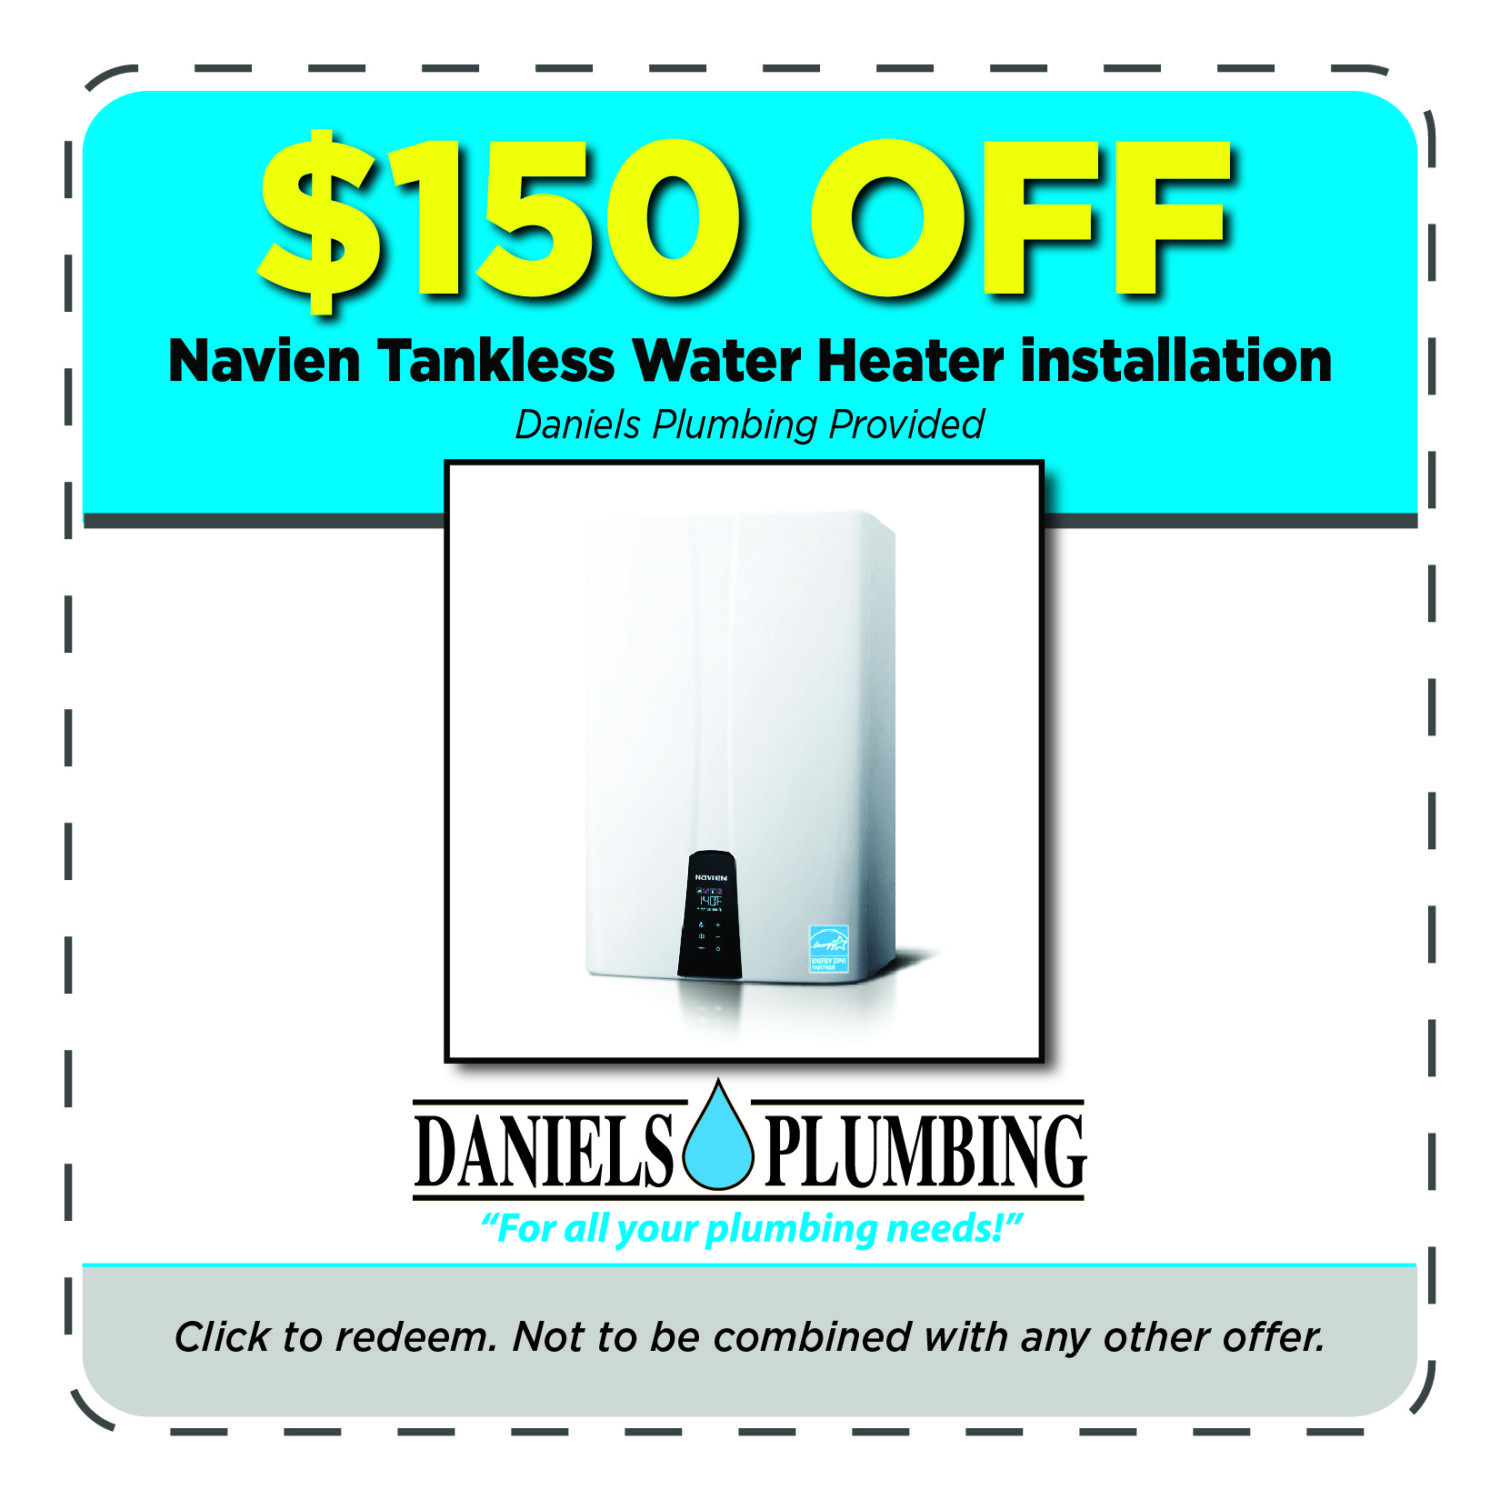 22-2 1124 Daniel's Plumbing Coupons - $150 Off Navien Tankless Water Heater-05